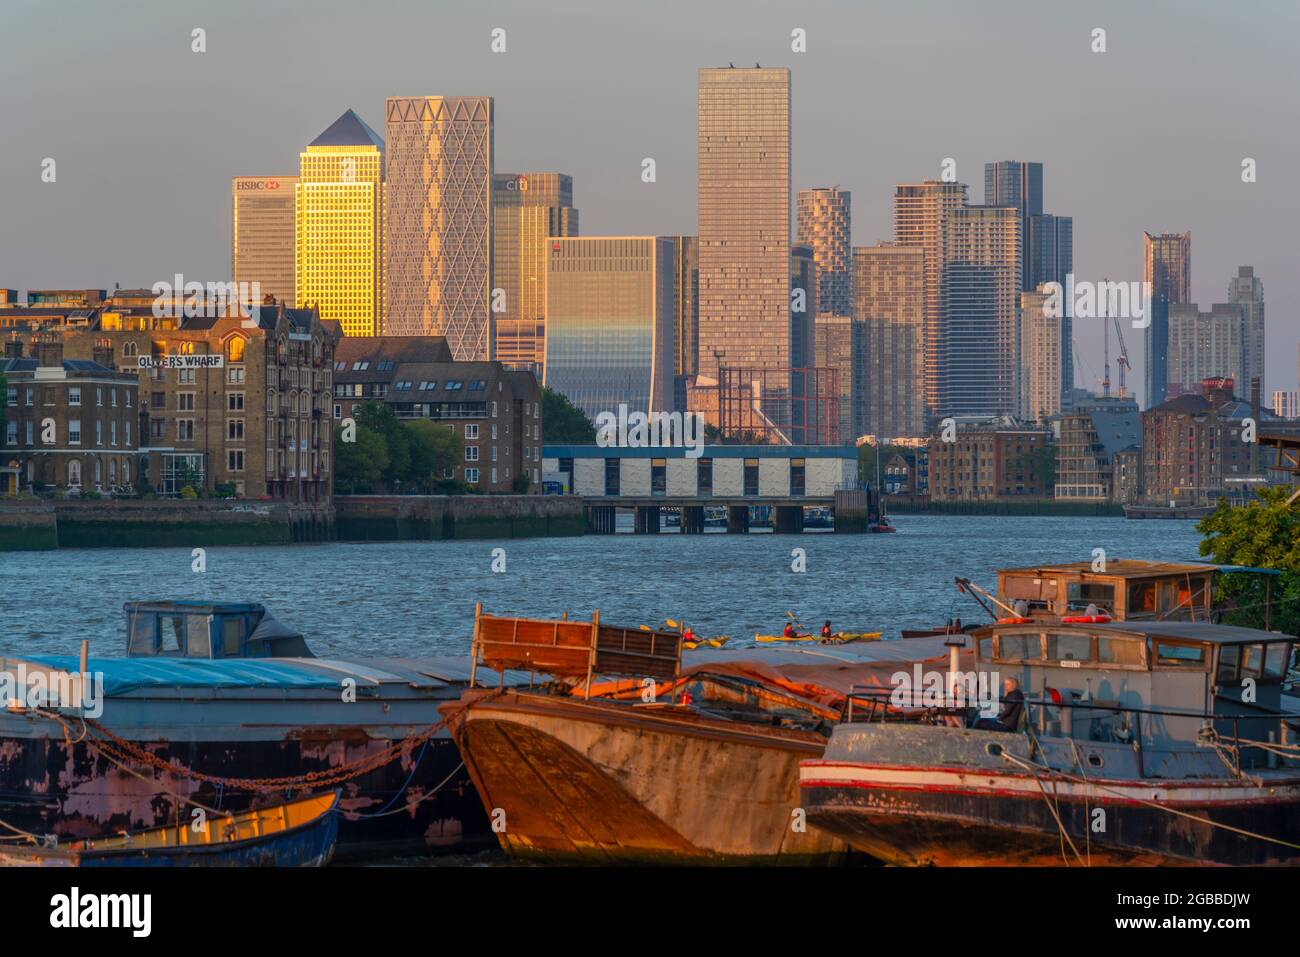 Vue sur les barges de la Tamise, les Docklands et Canary Wharf au coucher du soleil, Londres, Angleterre, Royaume-Uni, Europe Banque D'Images